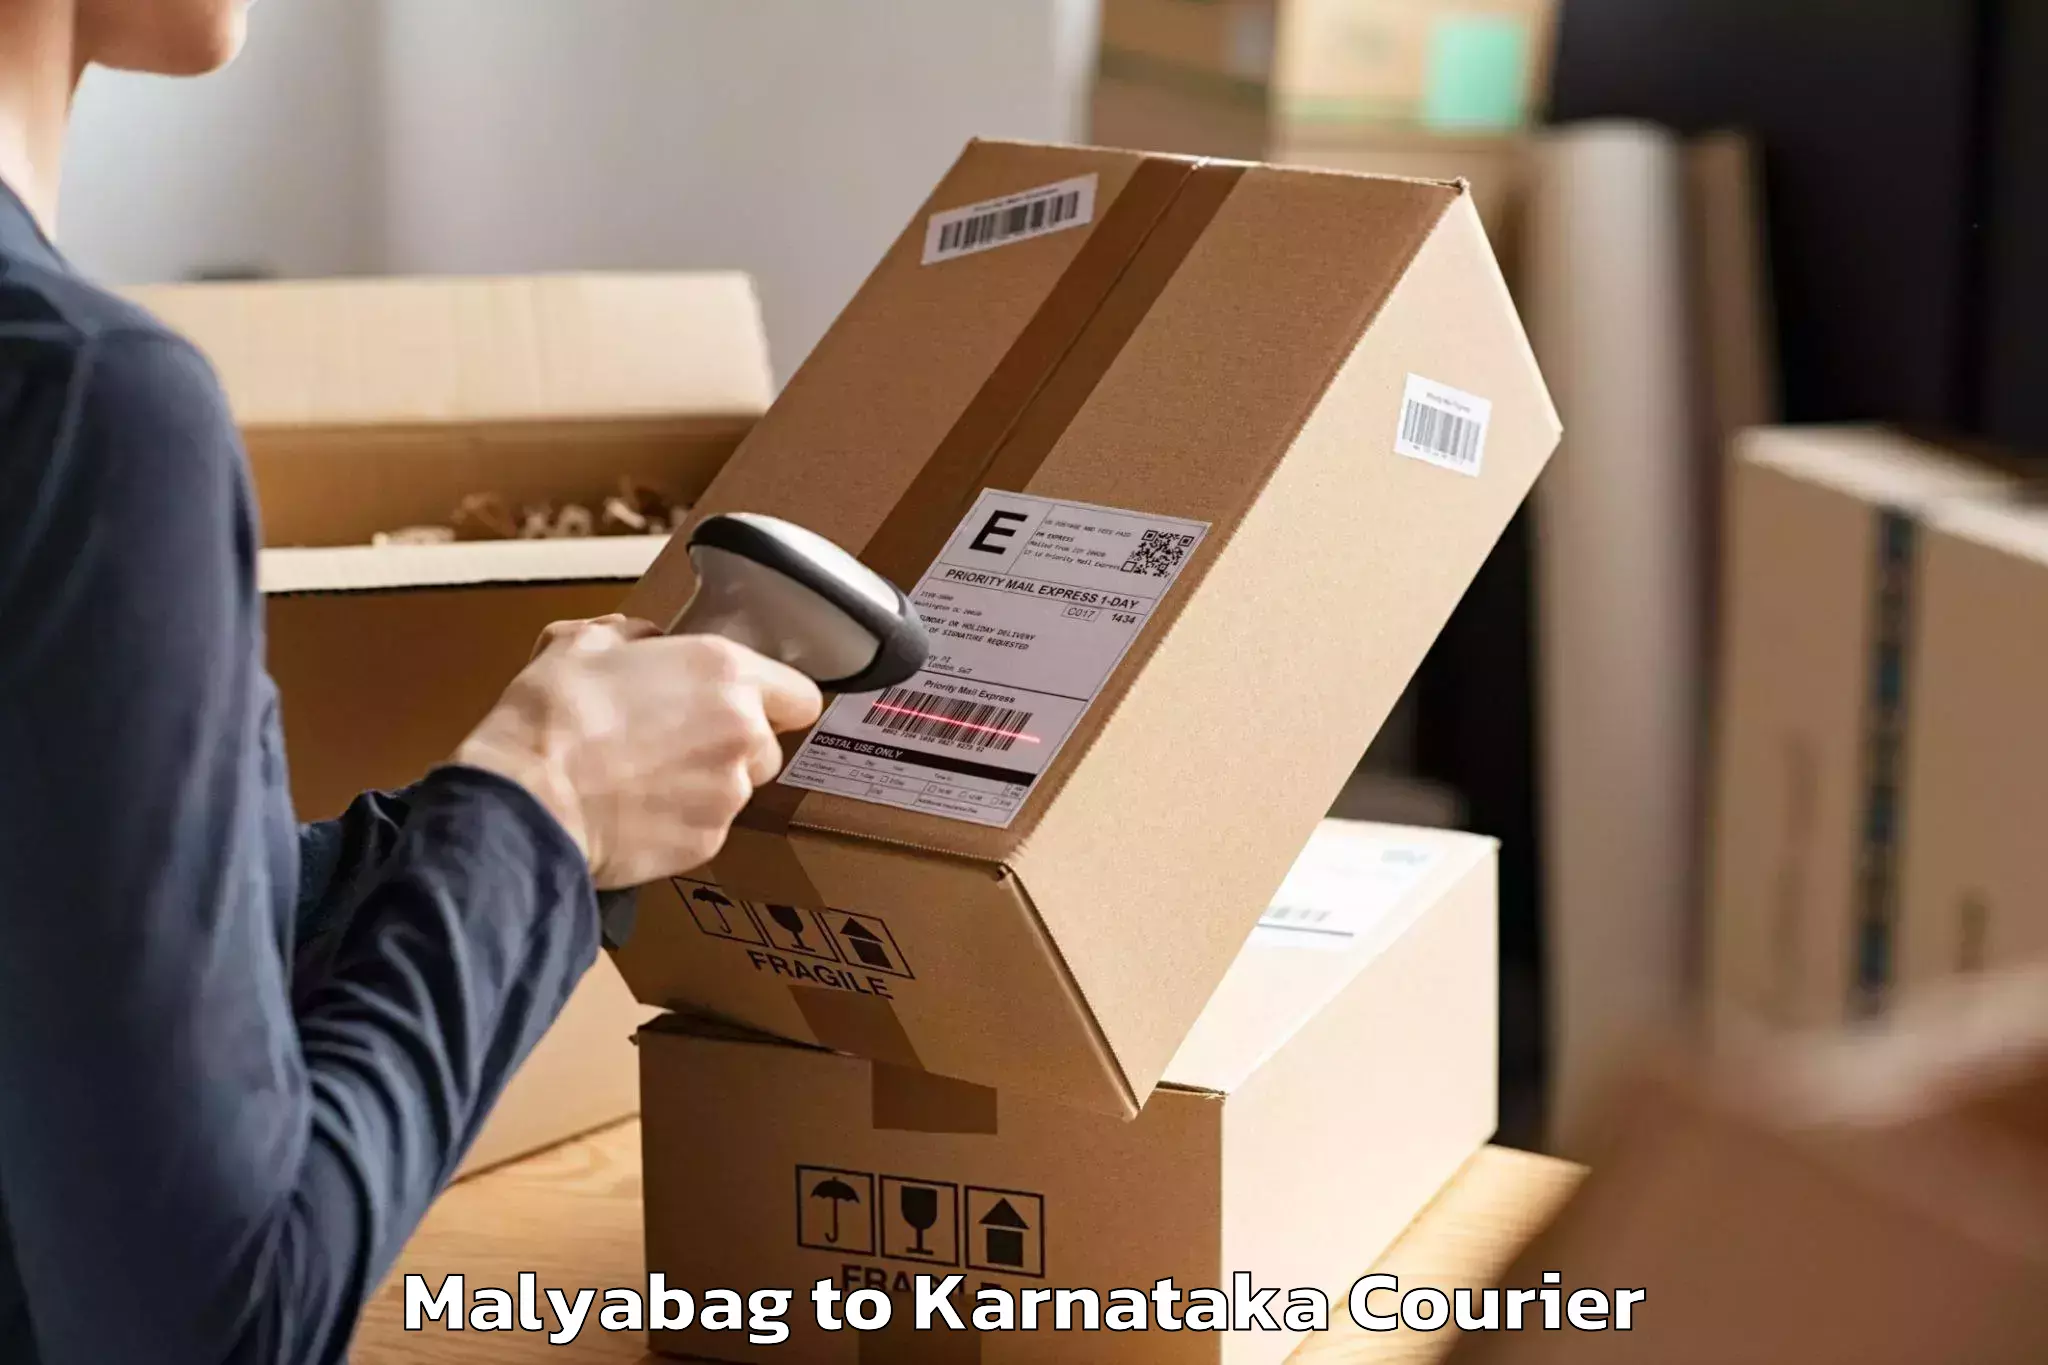 Moving and handling services Malyabag to Magadi